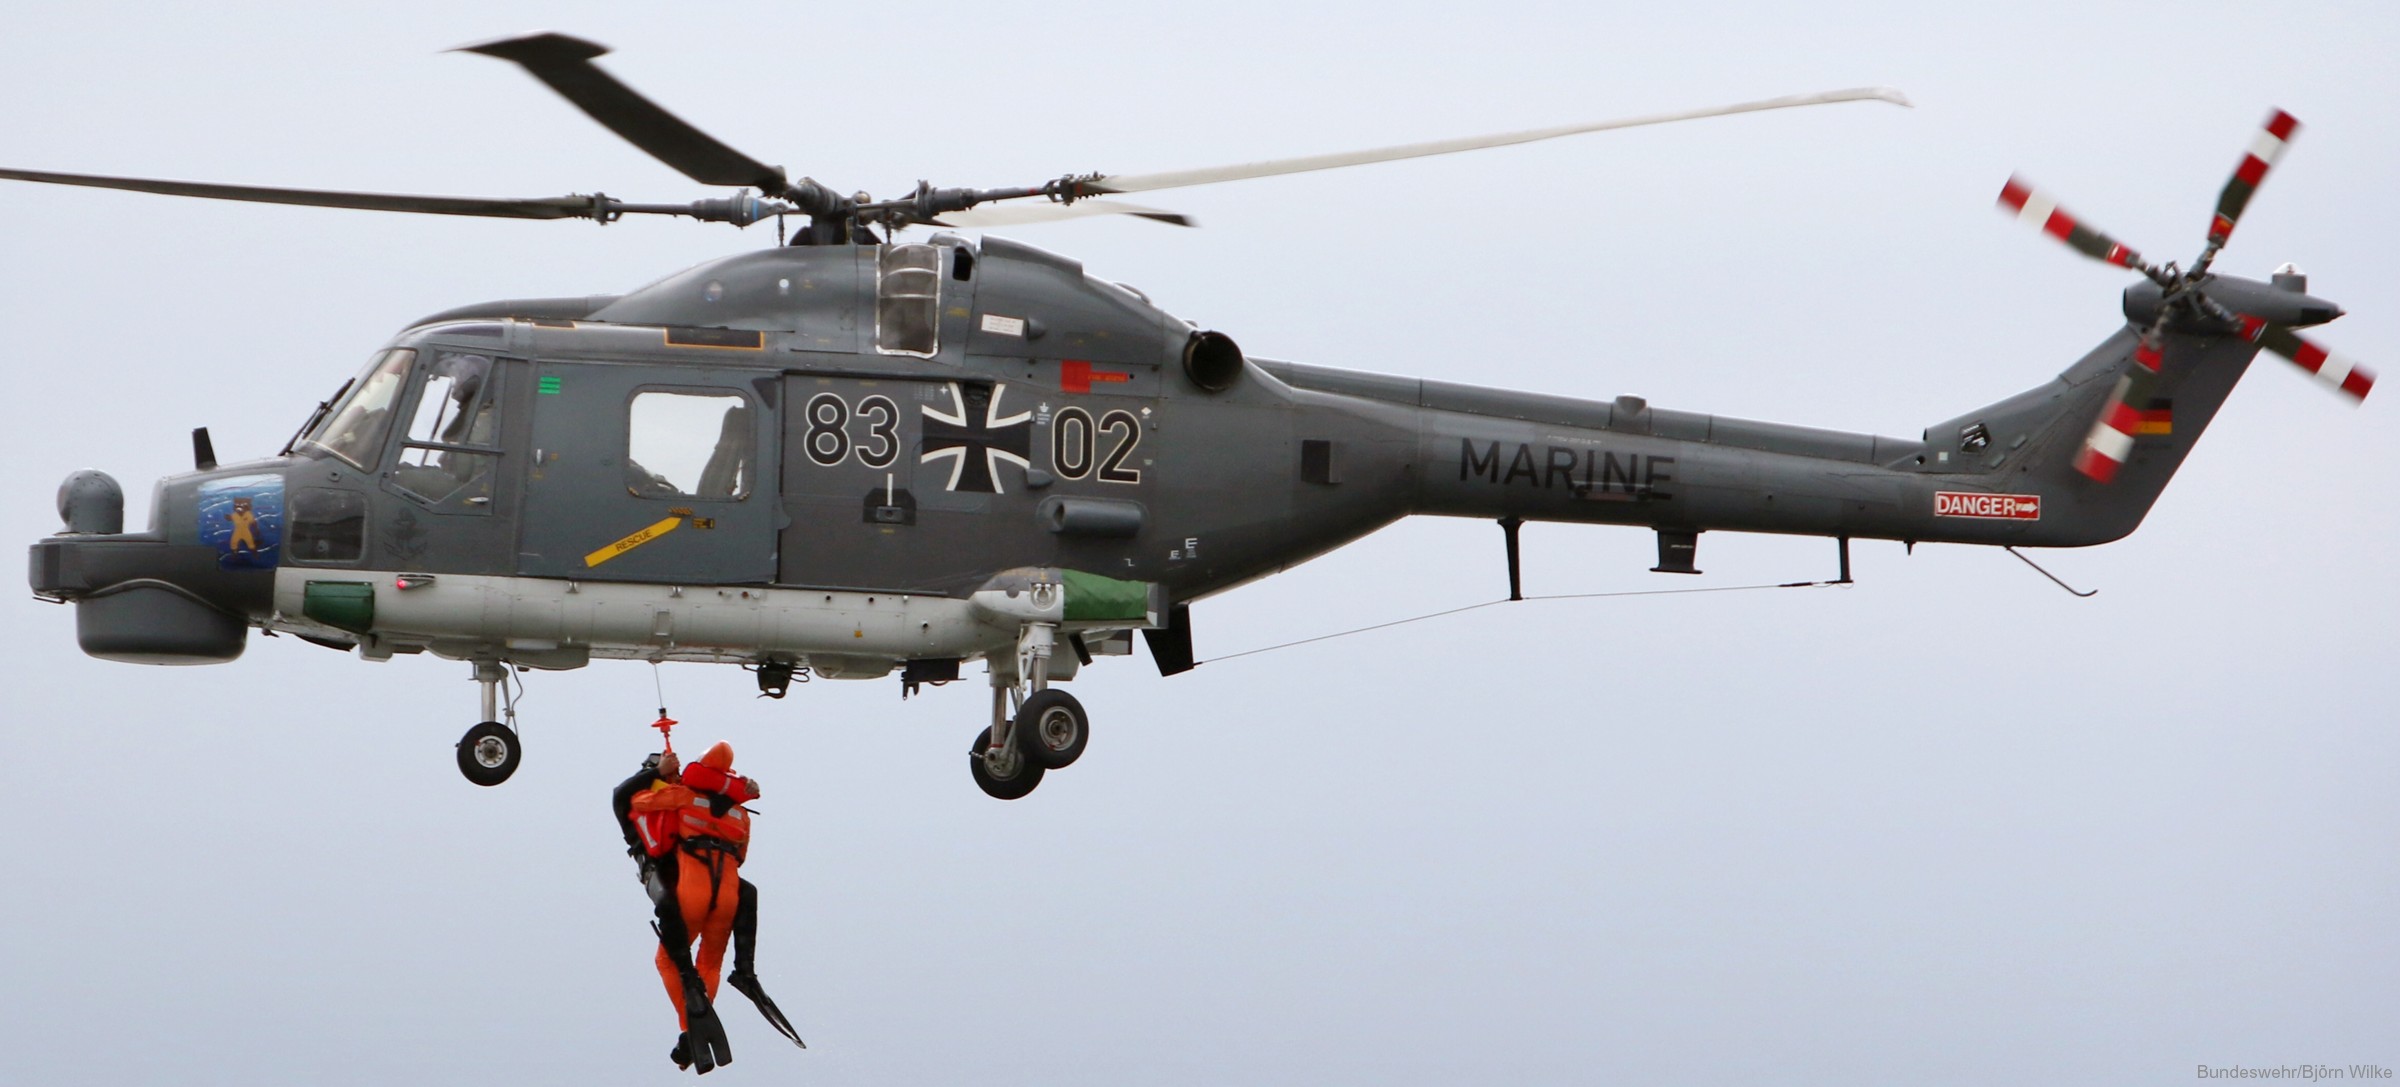 sea lynx mk.88a westland naval helicopter german navy deutsche marine 50